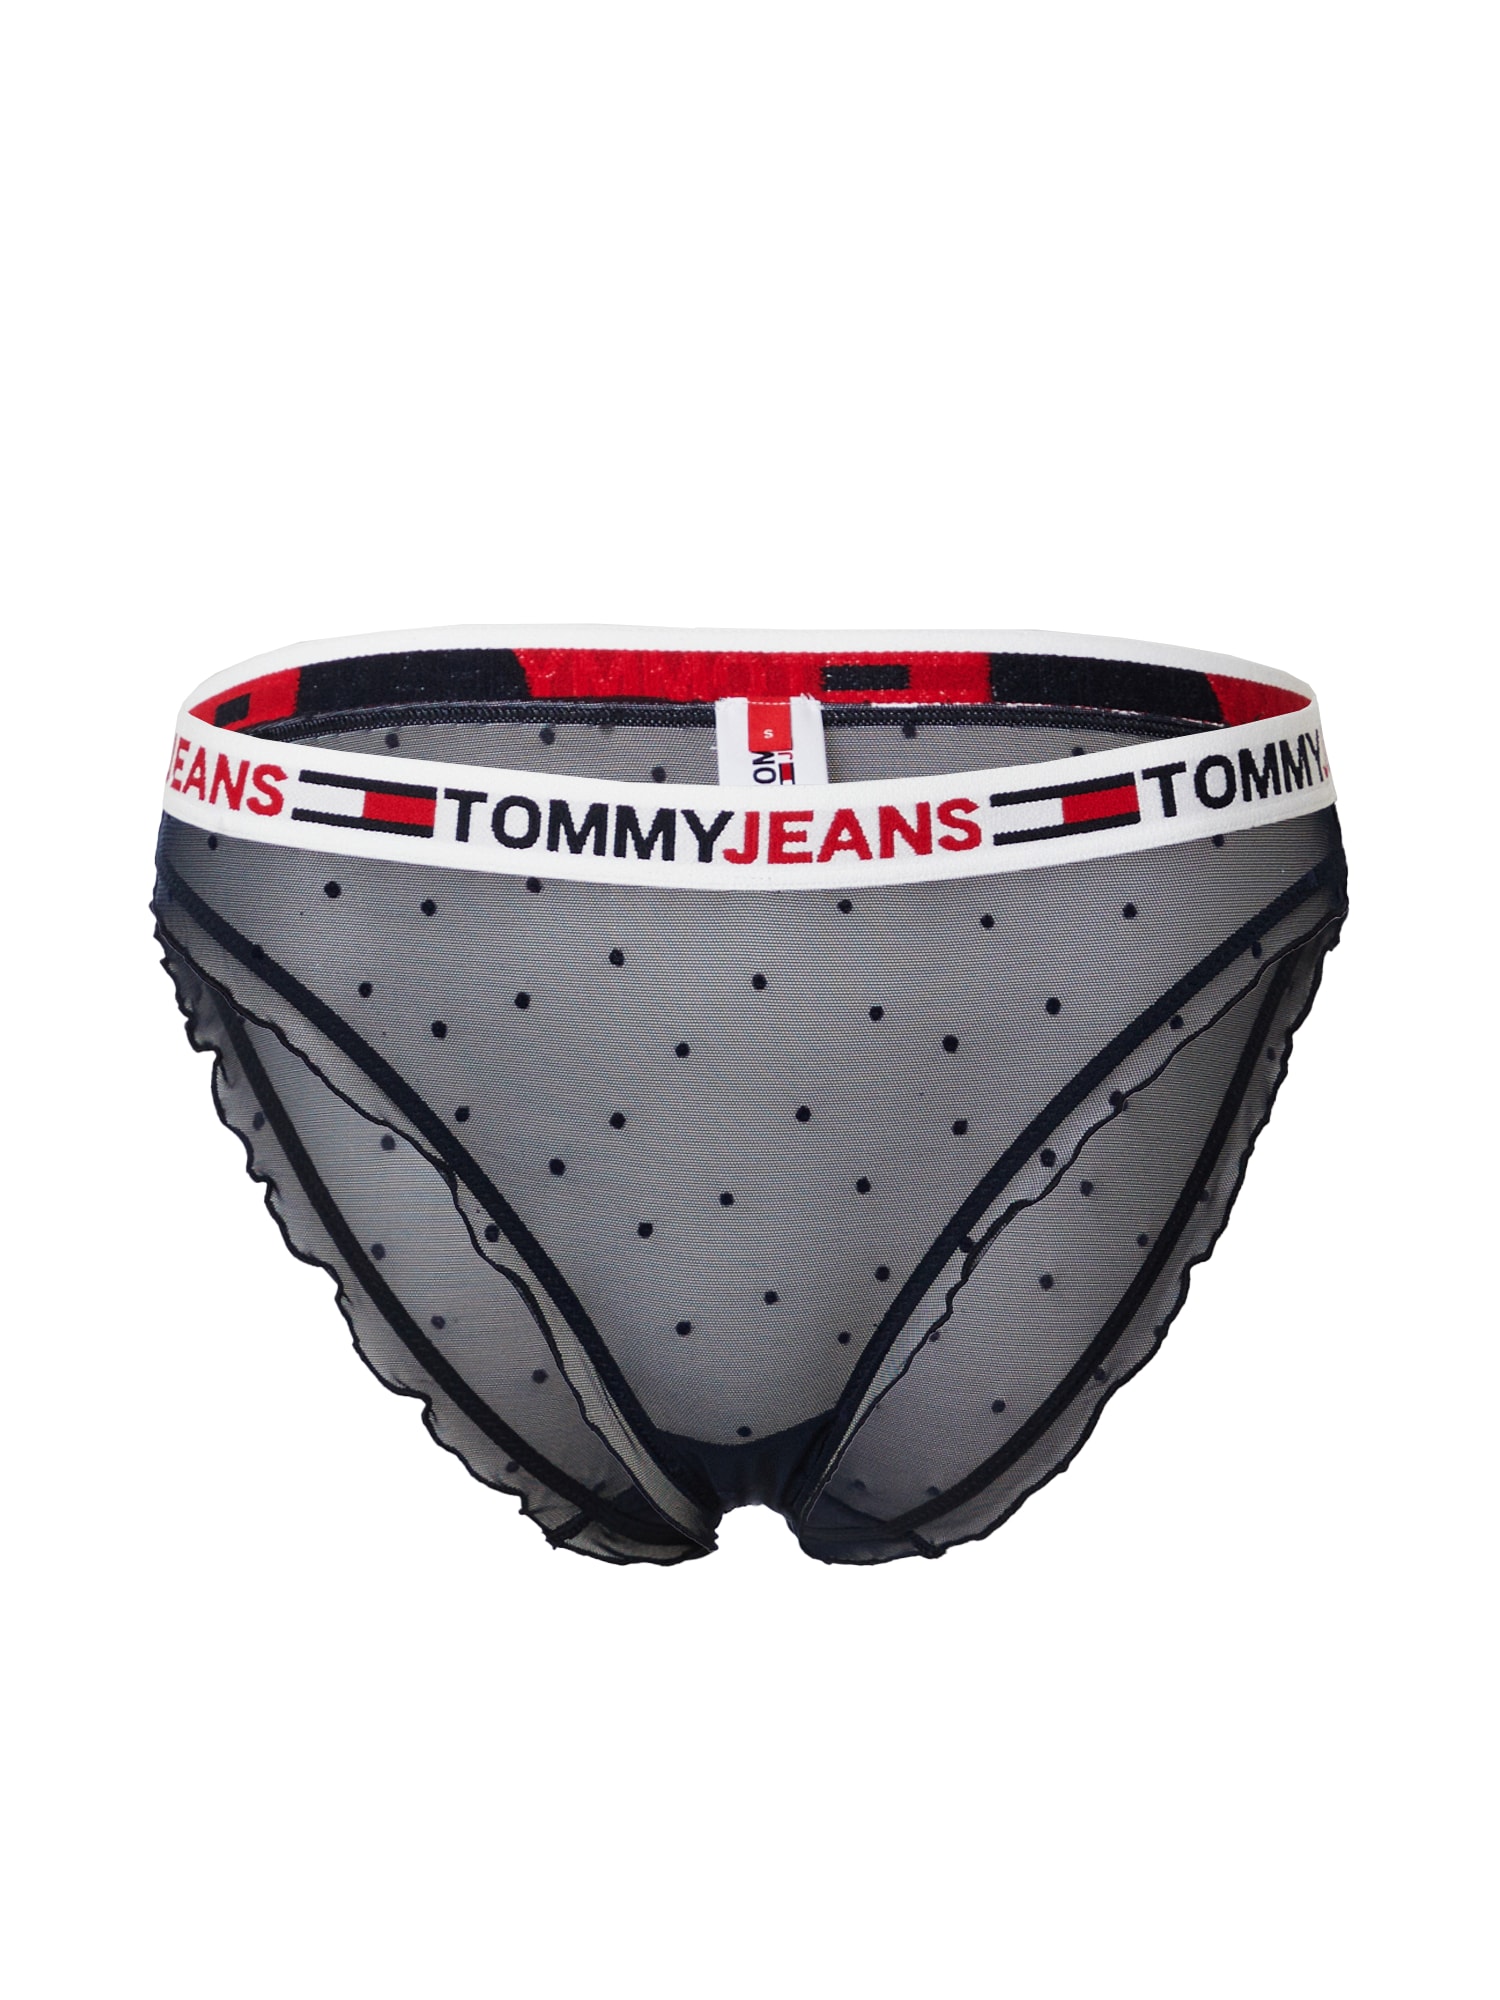 Tommy Hilfiger Underwear Spodnje hlačke  nočno modra / rdeča / bela